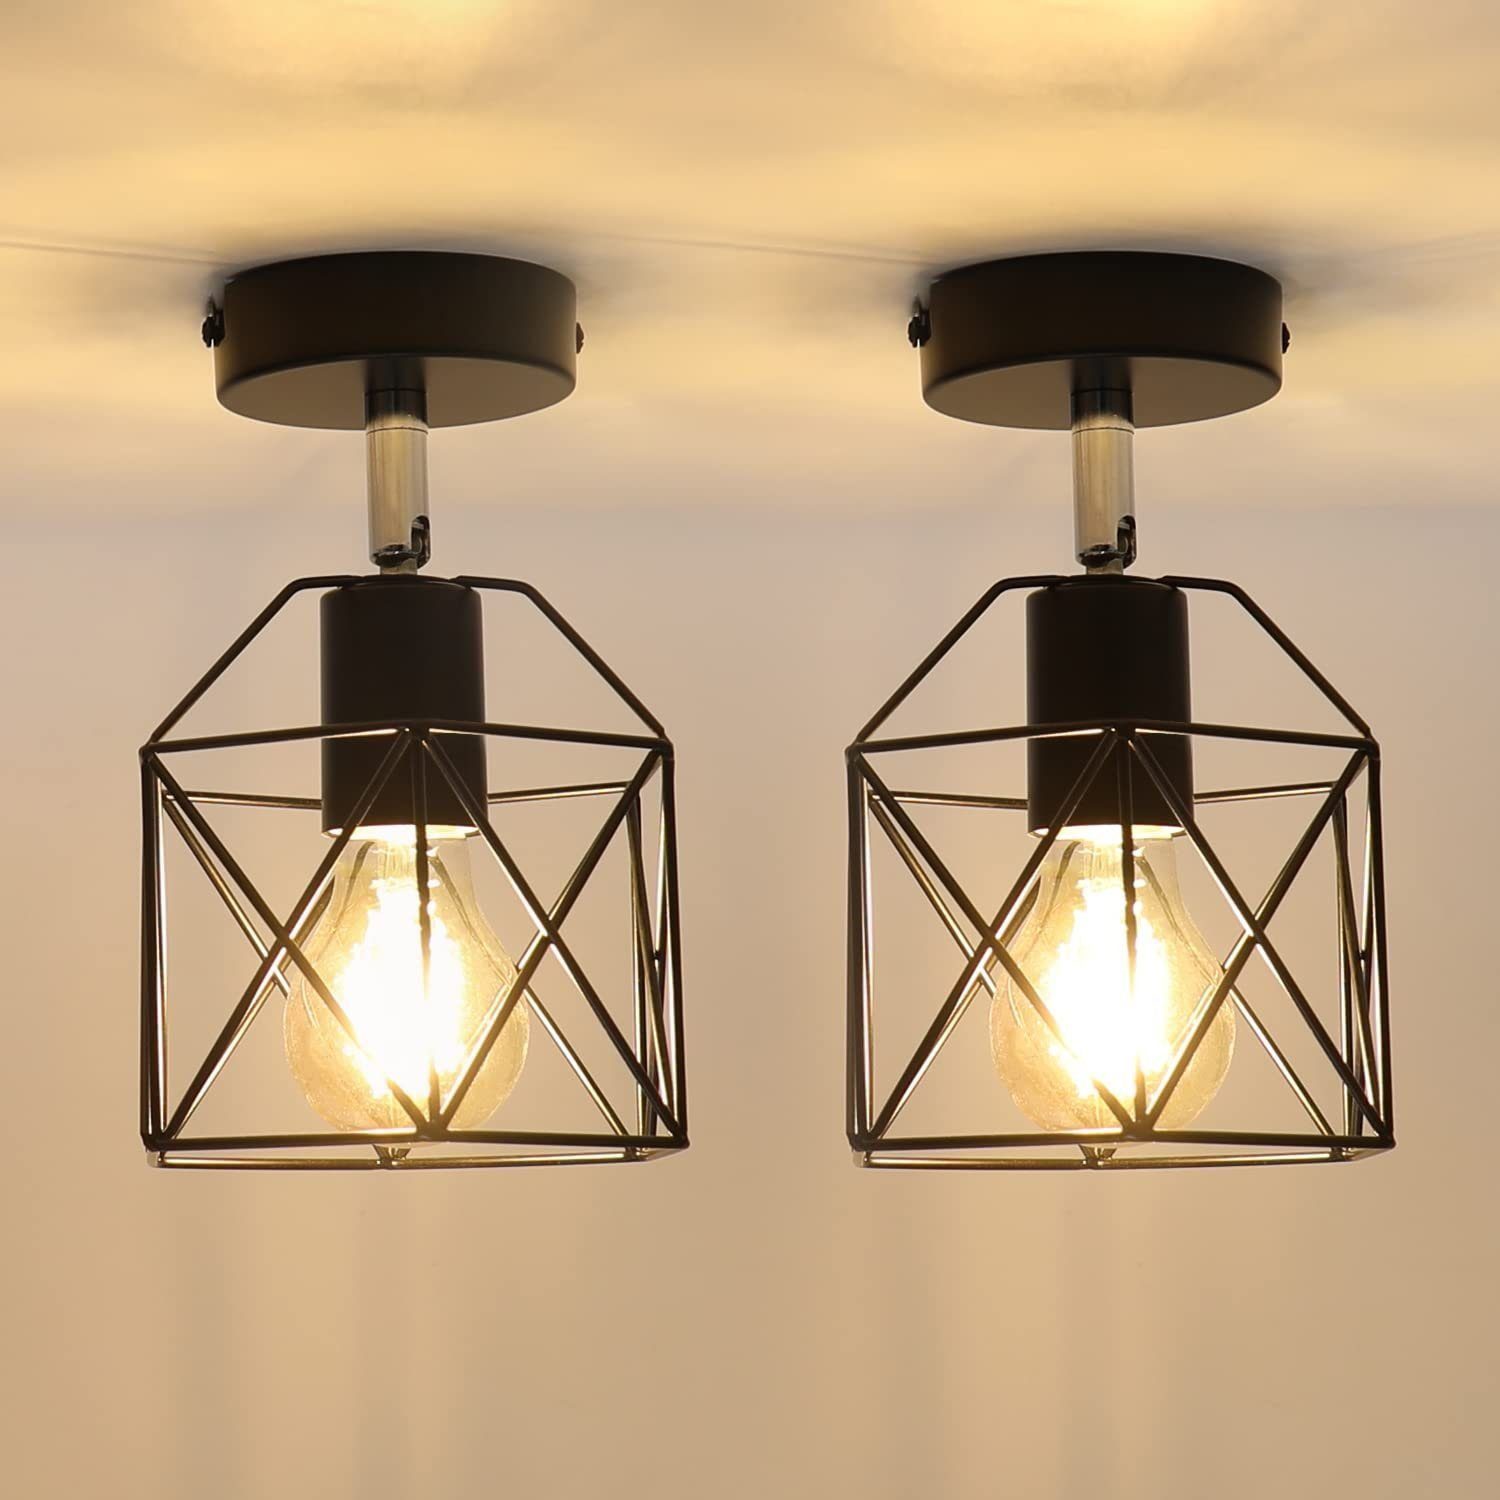 LED Deckenlampe aus E27 Metall Schwarz, ZMH Retro Deckenleuchte Vintage in wechselbar, Deckenlampe